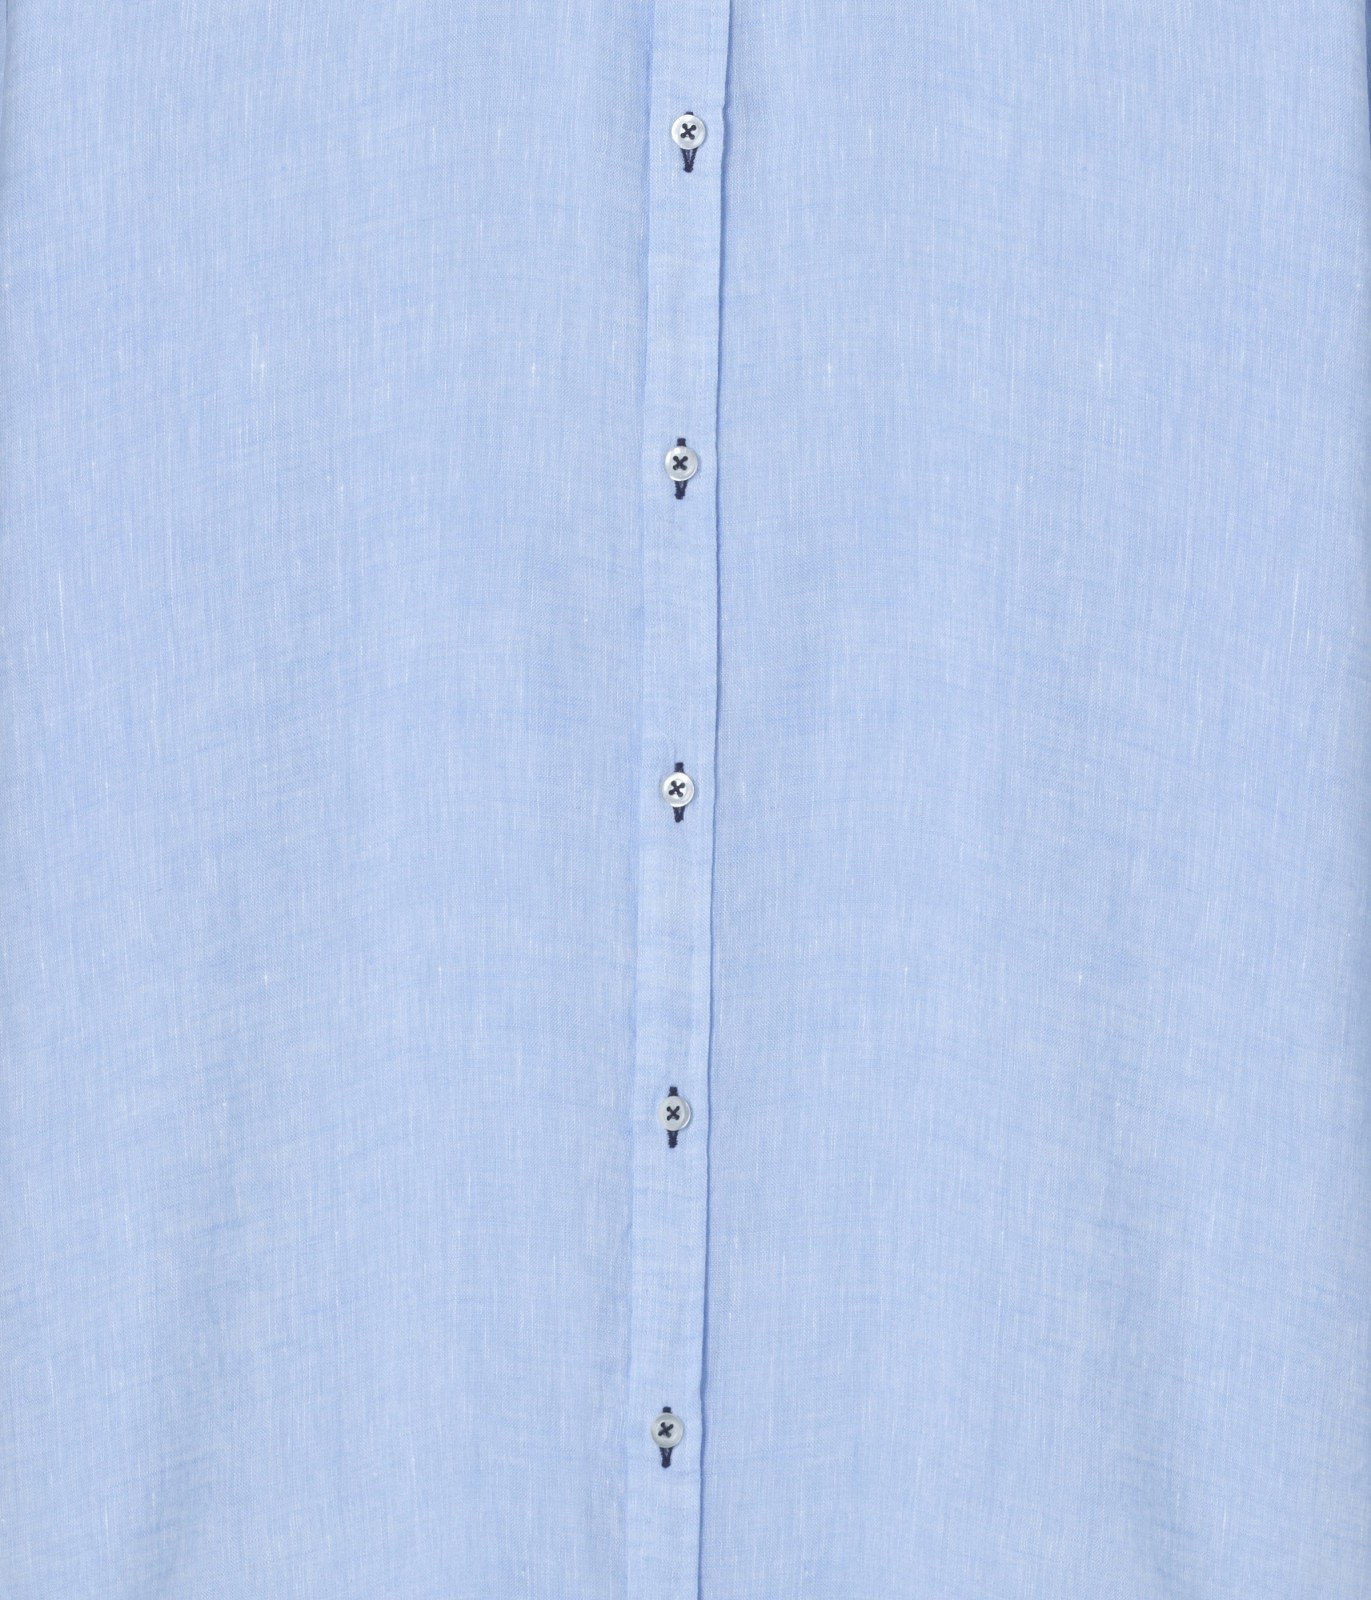 Plain sky blue color long sleeves shirt for men